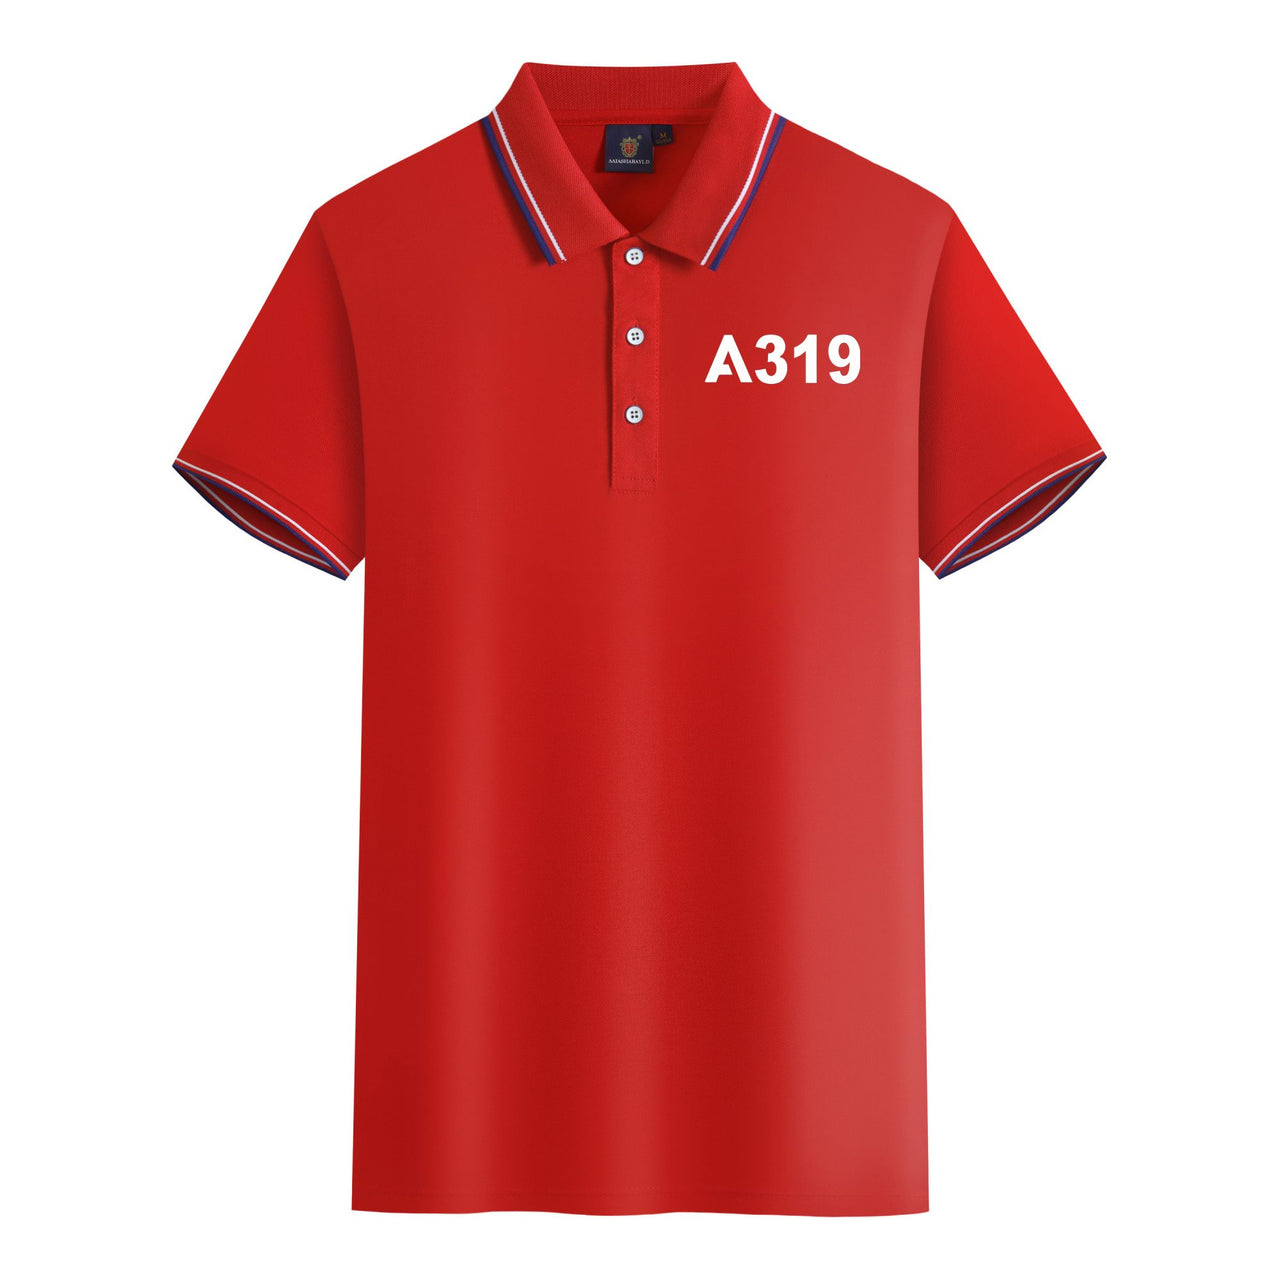 A319 Flat Text Designed Stylish Polo T-Shirts